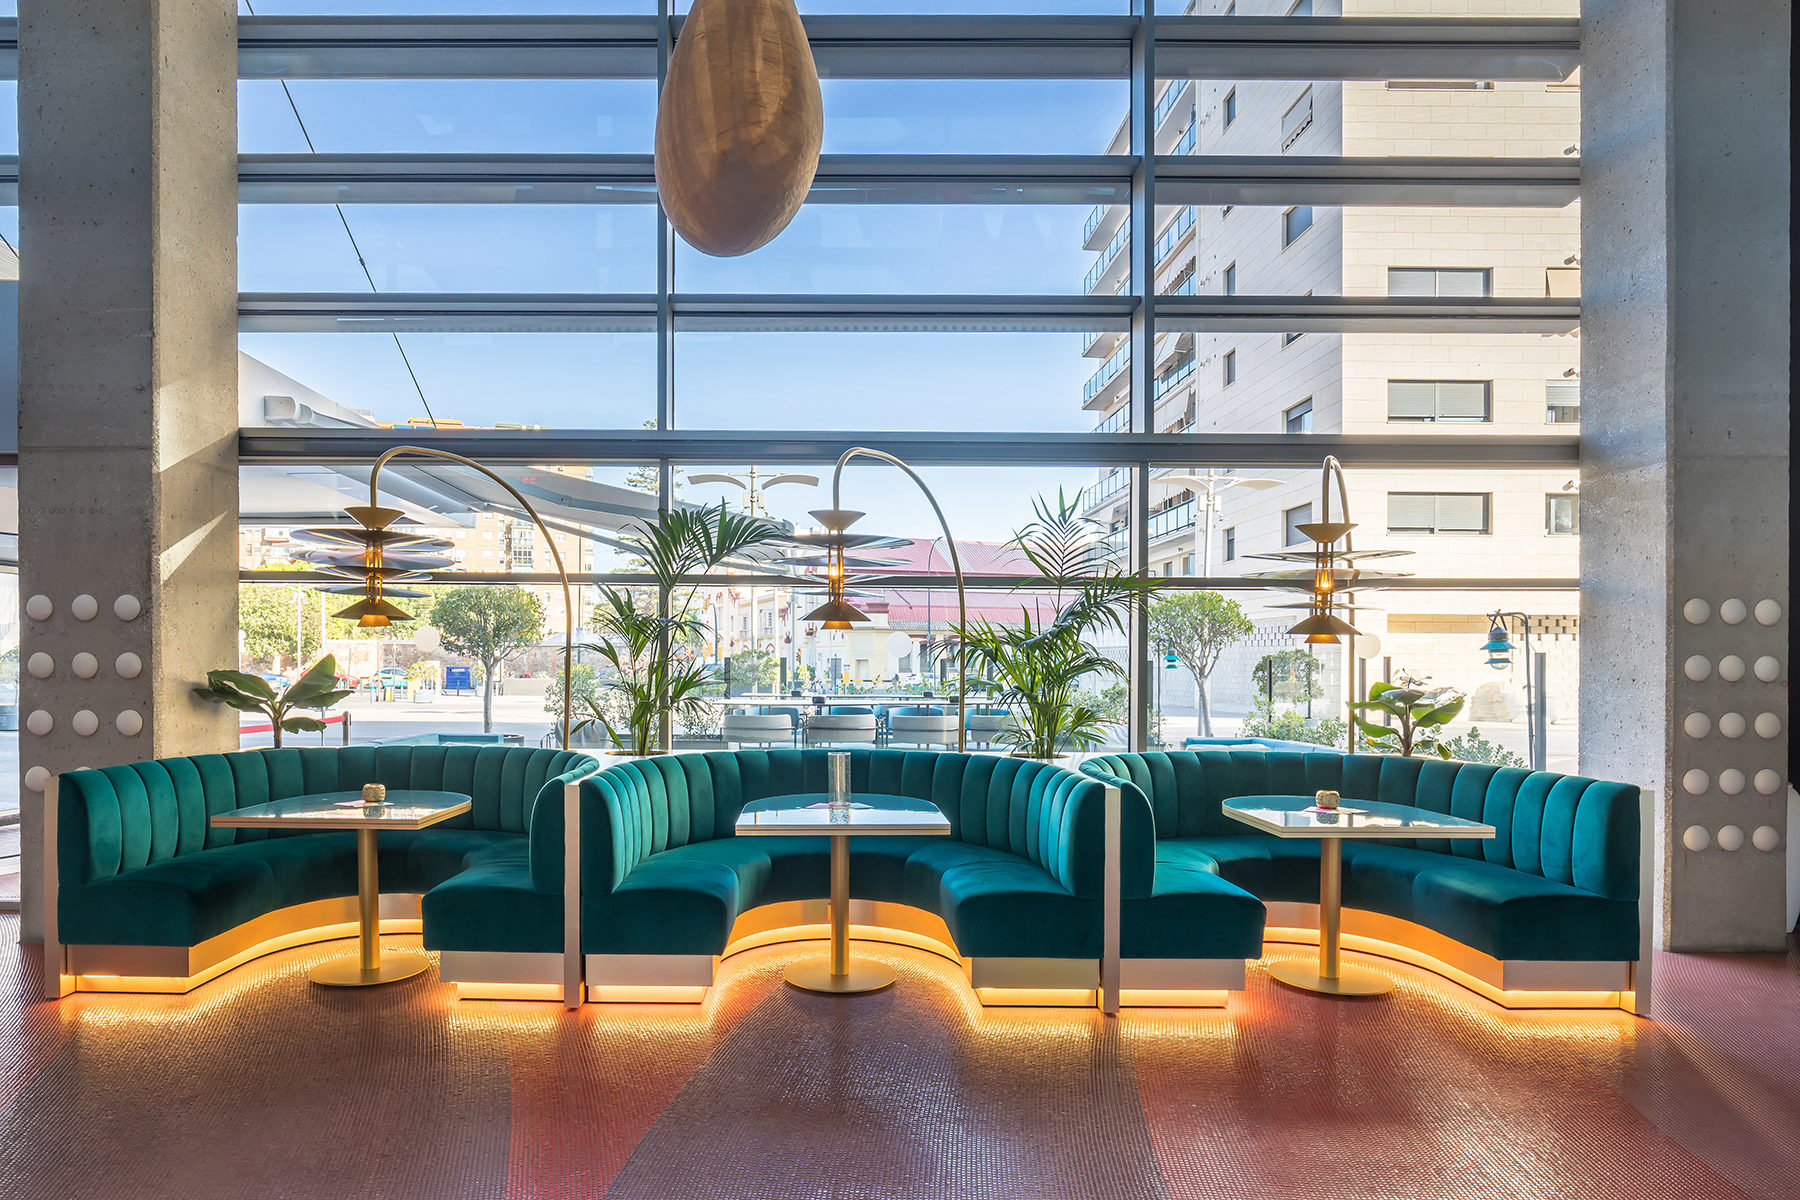 IlmioDesign rediseña la planta baja del Hotel Barceló Málaga con piezas de mobiliario y lámparas confeccionadas a media